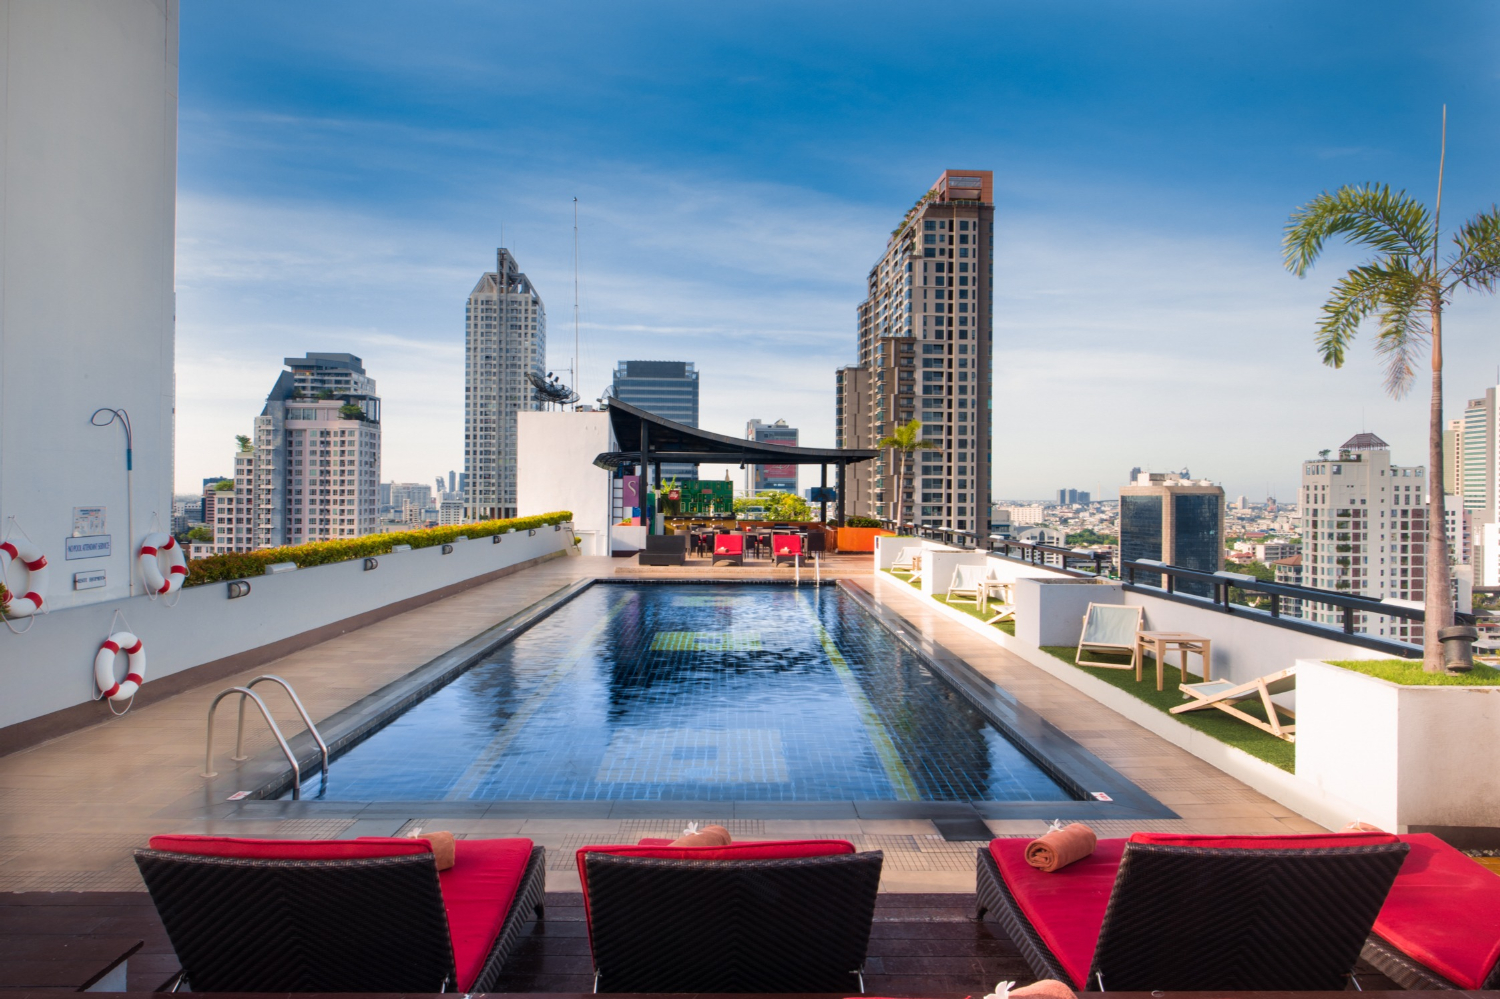 Бассейн в бангкоке. Силом Бангкок. Таиланд город Бангкок отель с бассейном на крыше. Furama Silom Hotel Bangkok. Отель в Бангкоке с бассейном на крыше 80 этажей.